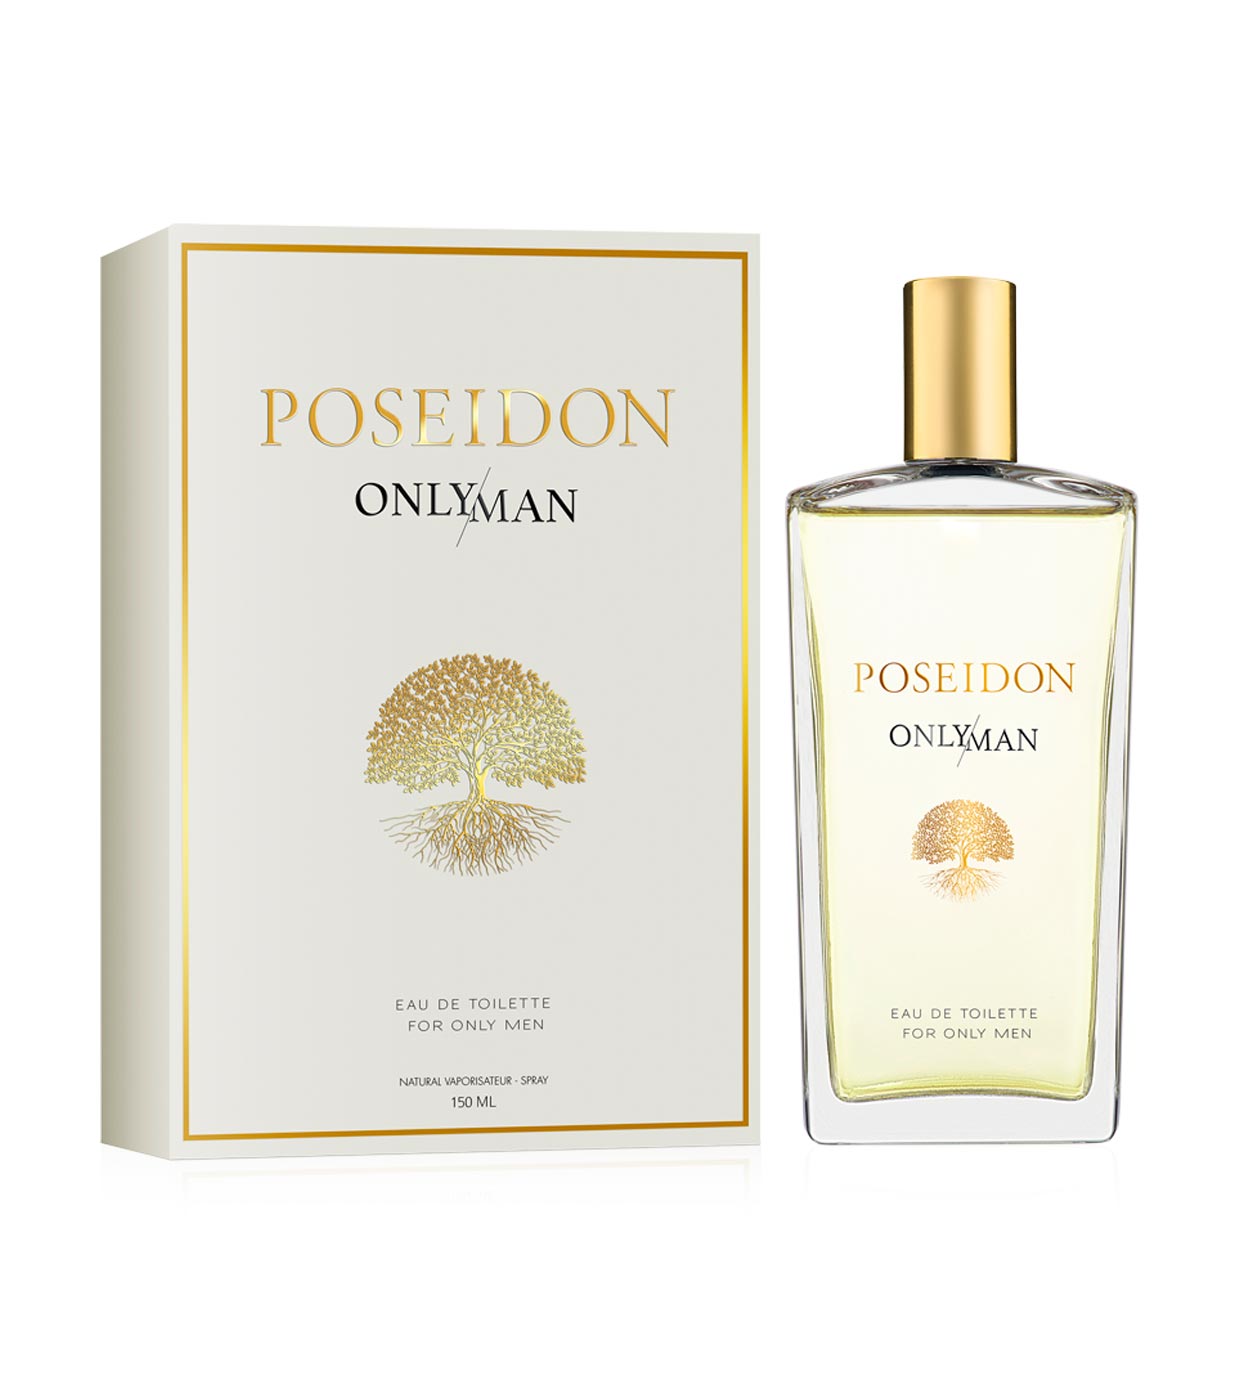 Sois más de perfumes especiados o amaderados? 😎 Poseidon hombre